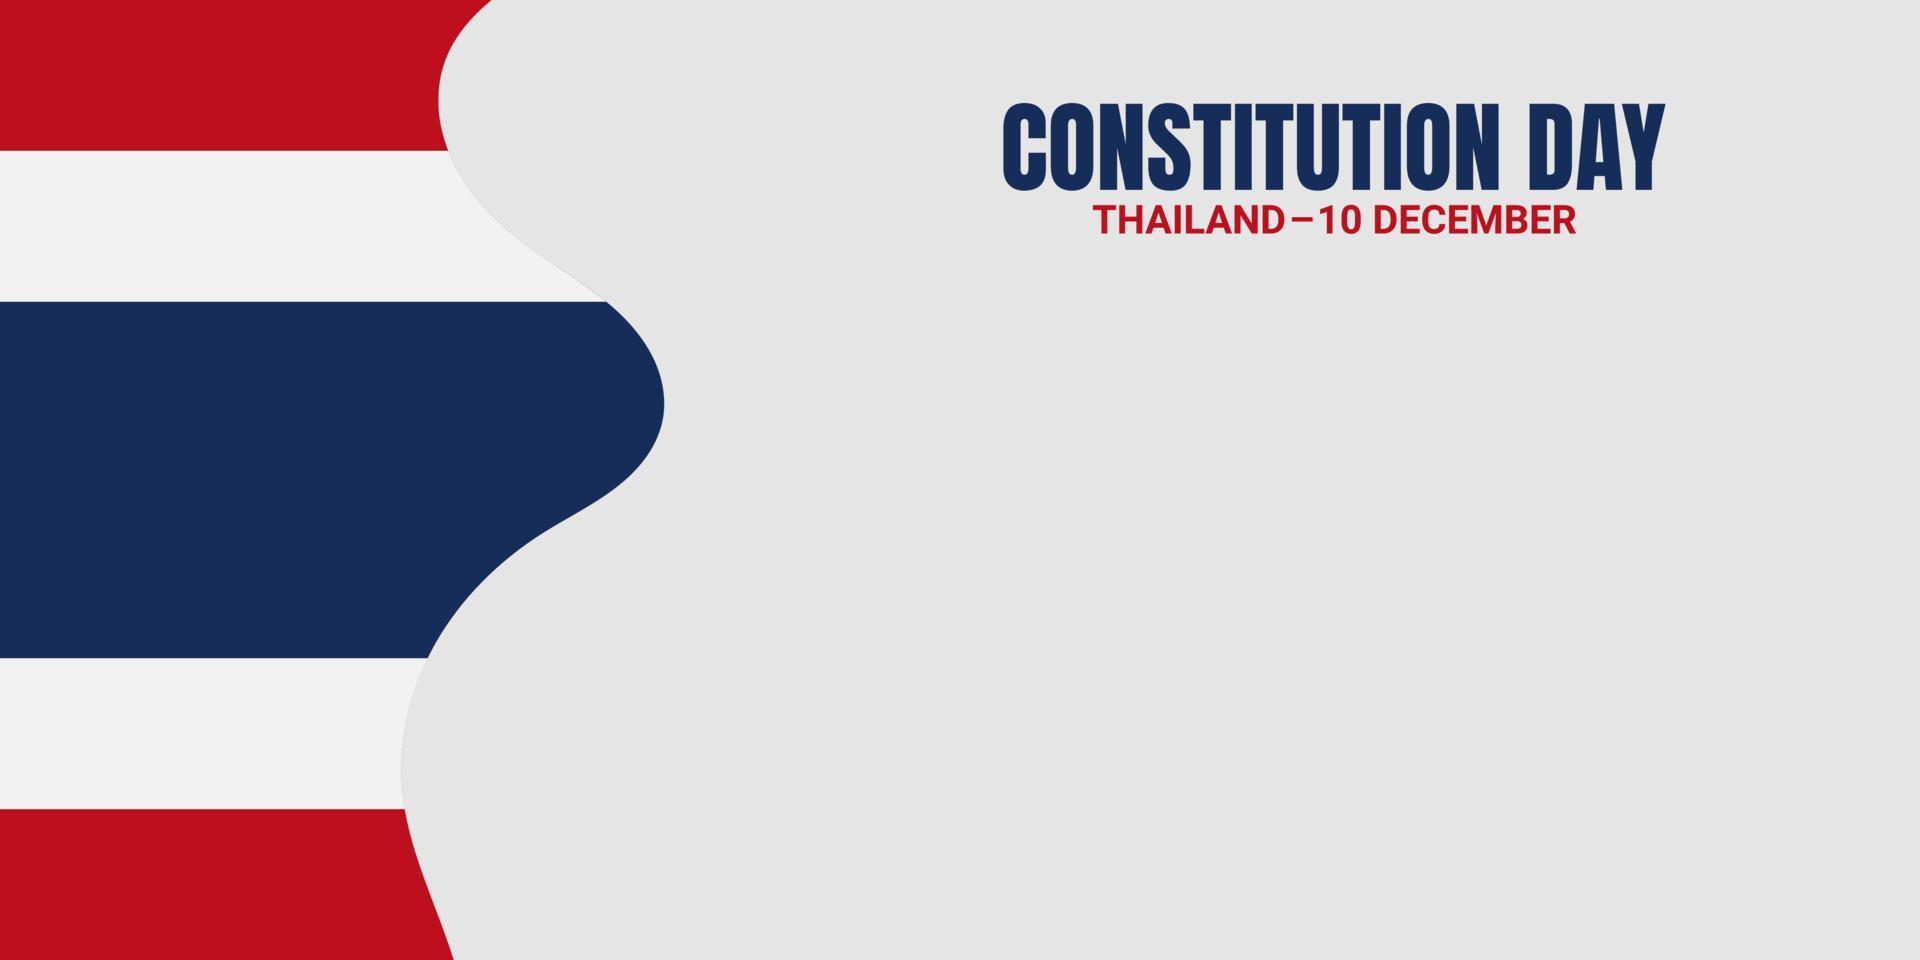 thailand grondwet dag achtergrond vectorillustratie, en kopieer ruimte. geschikt om op inhoud met dat thema te worden geplaatst. vlag van thailand vector